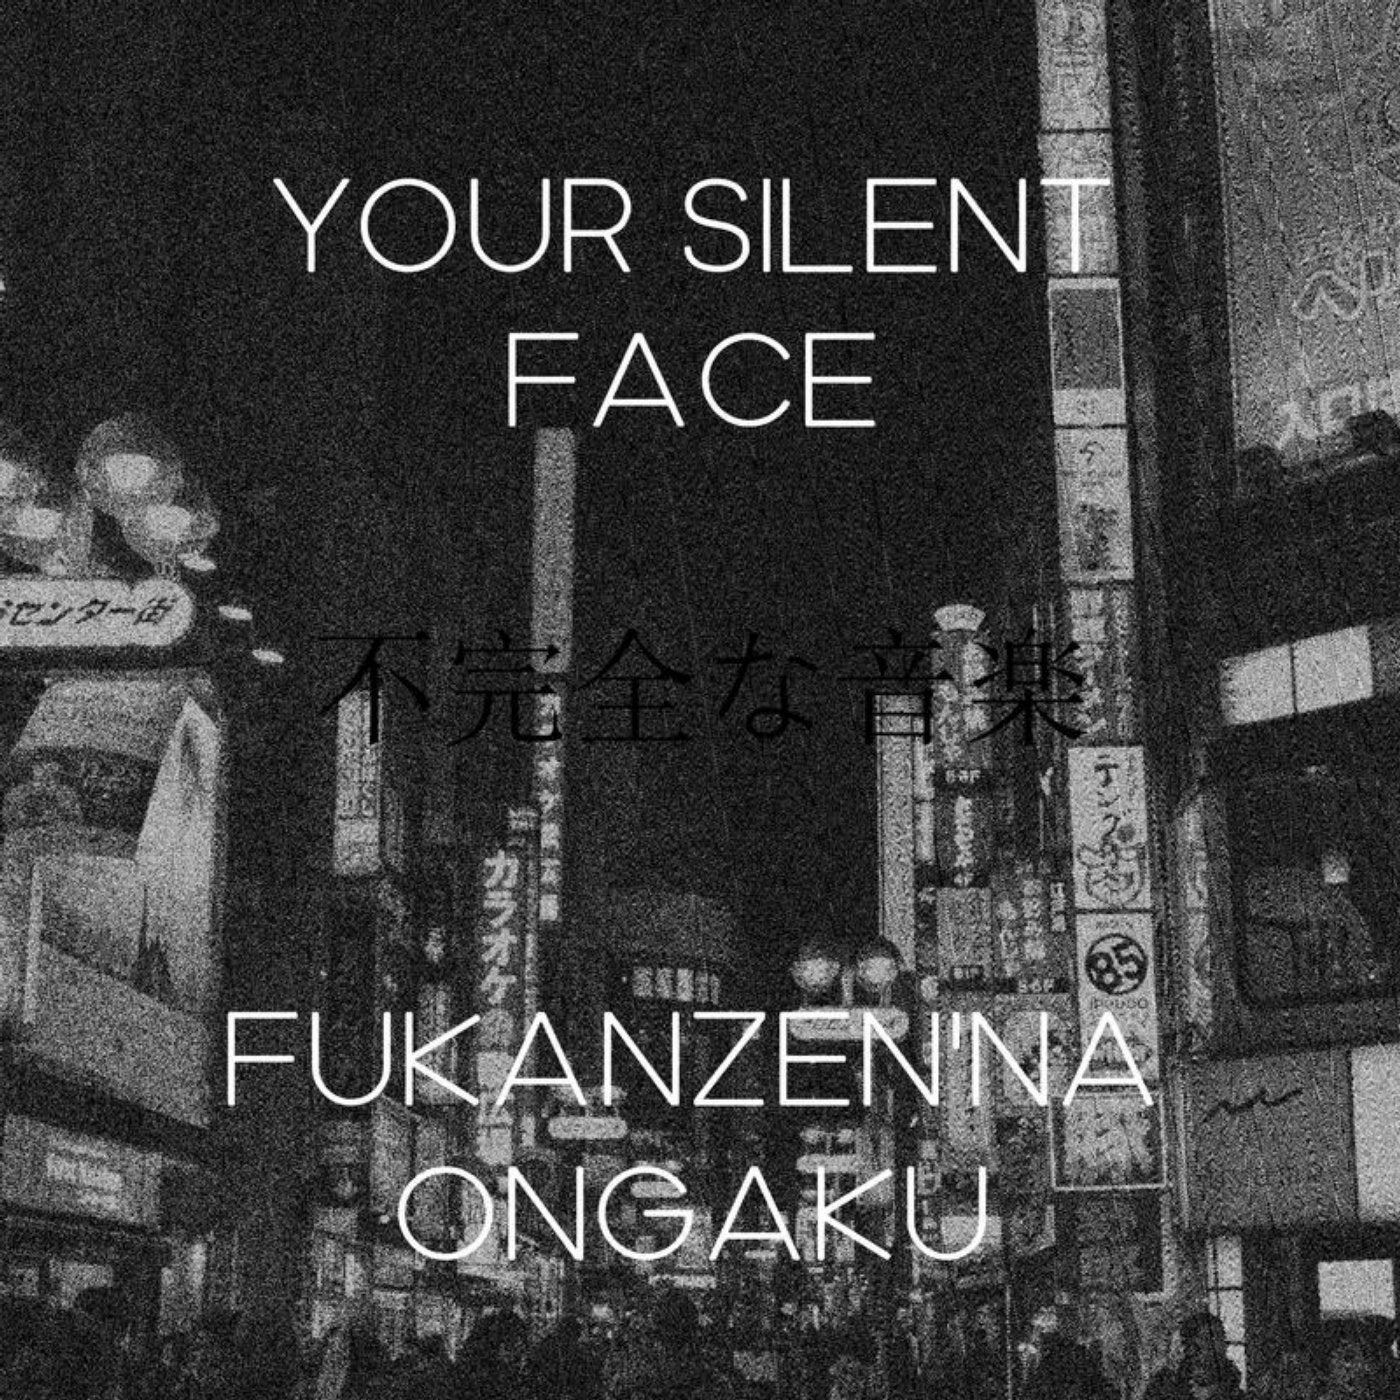 Fukanzen'na Ongaku